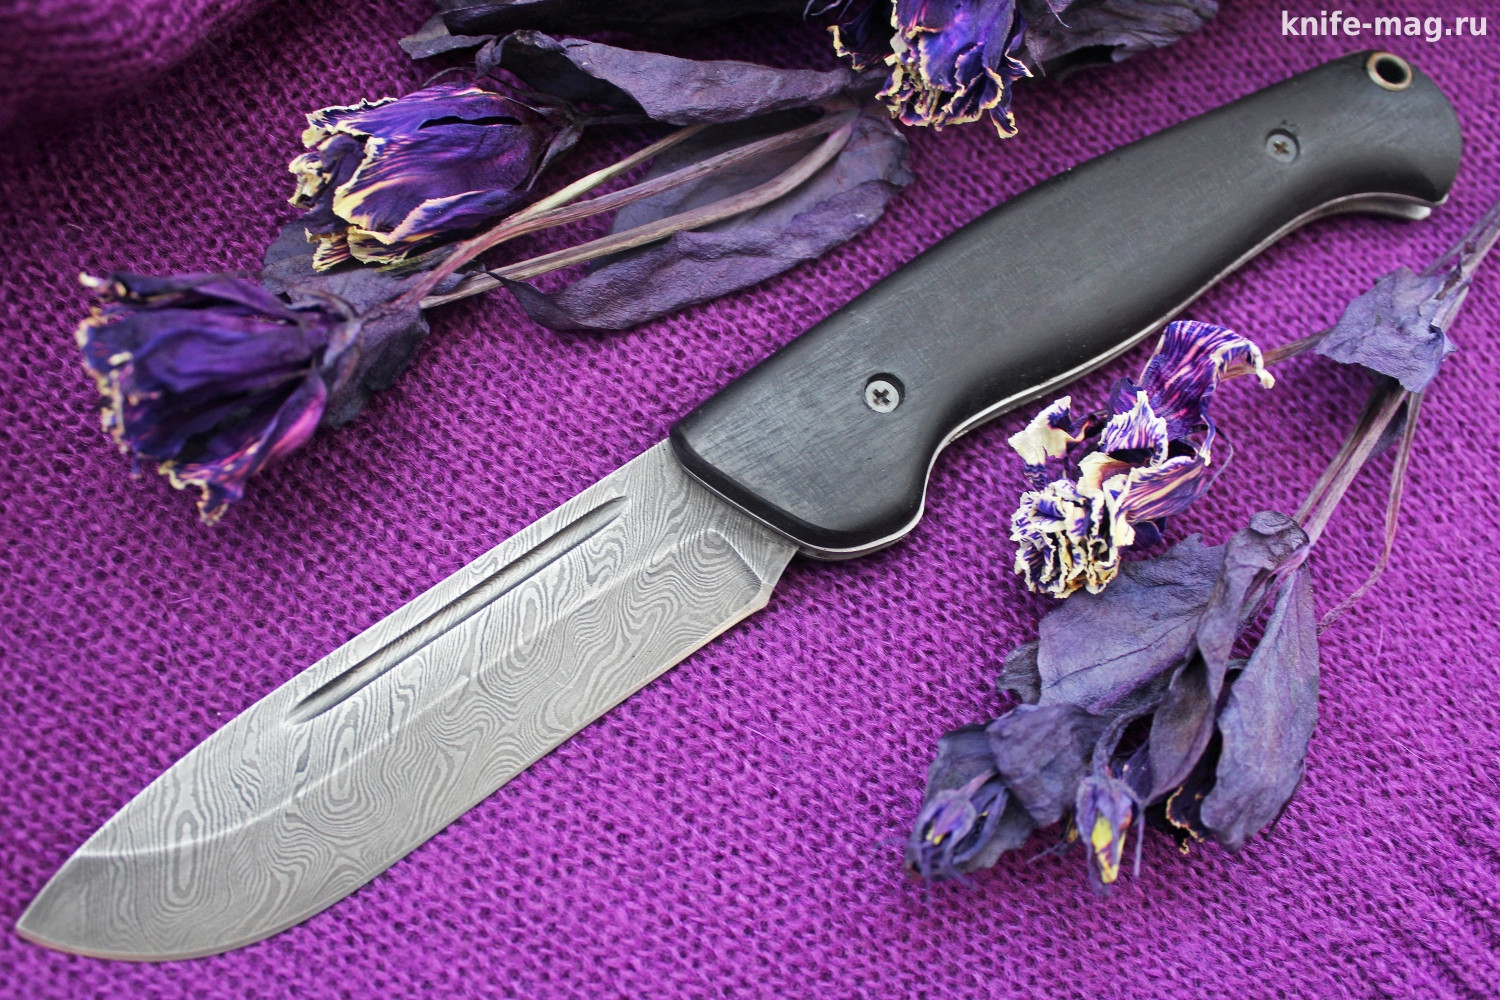 Купить нож Складной нож Партнер Дамаск (накладки граб) | KNIFE-MAG.RU